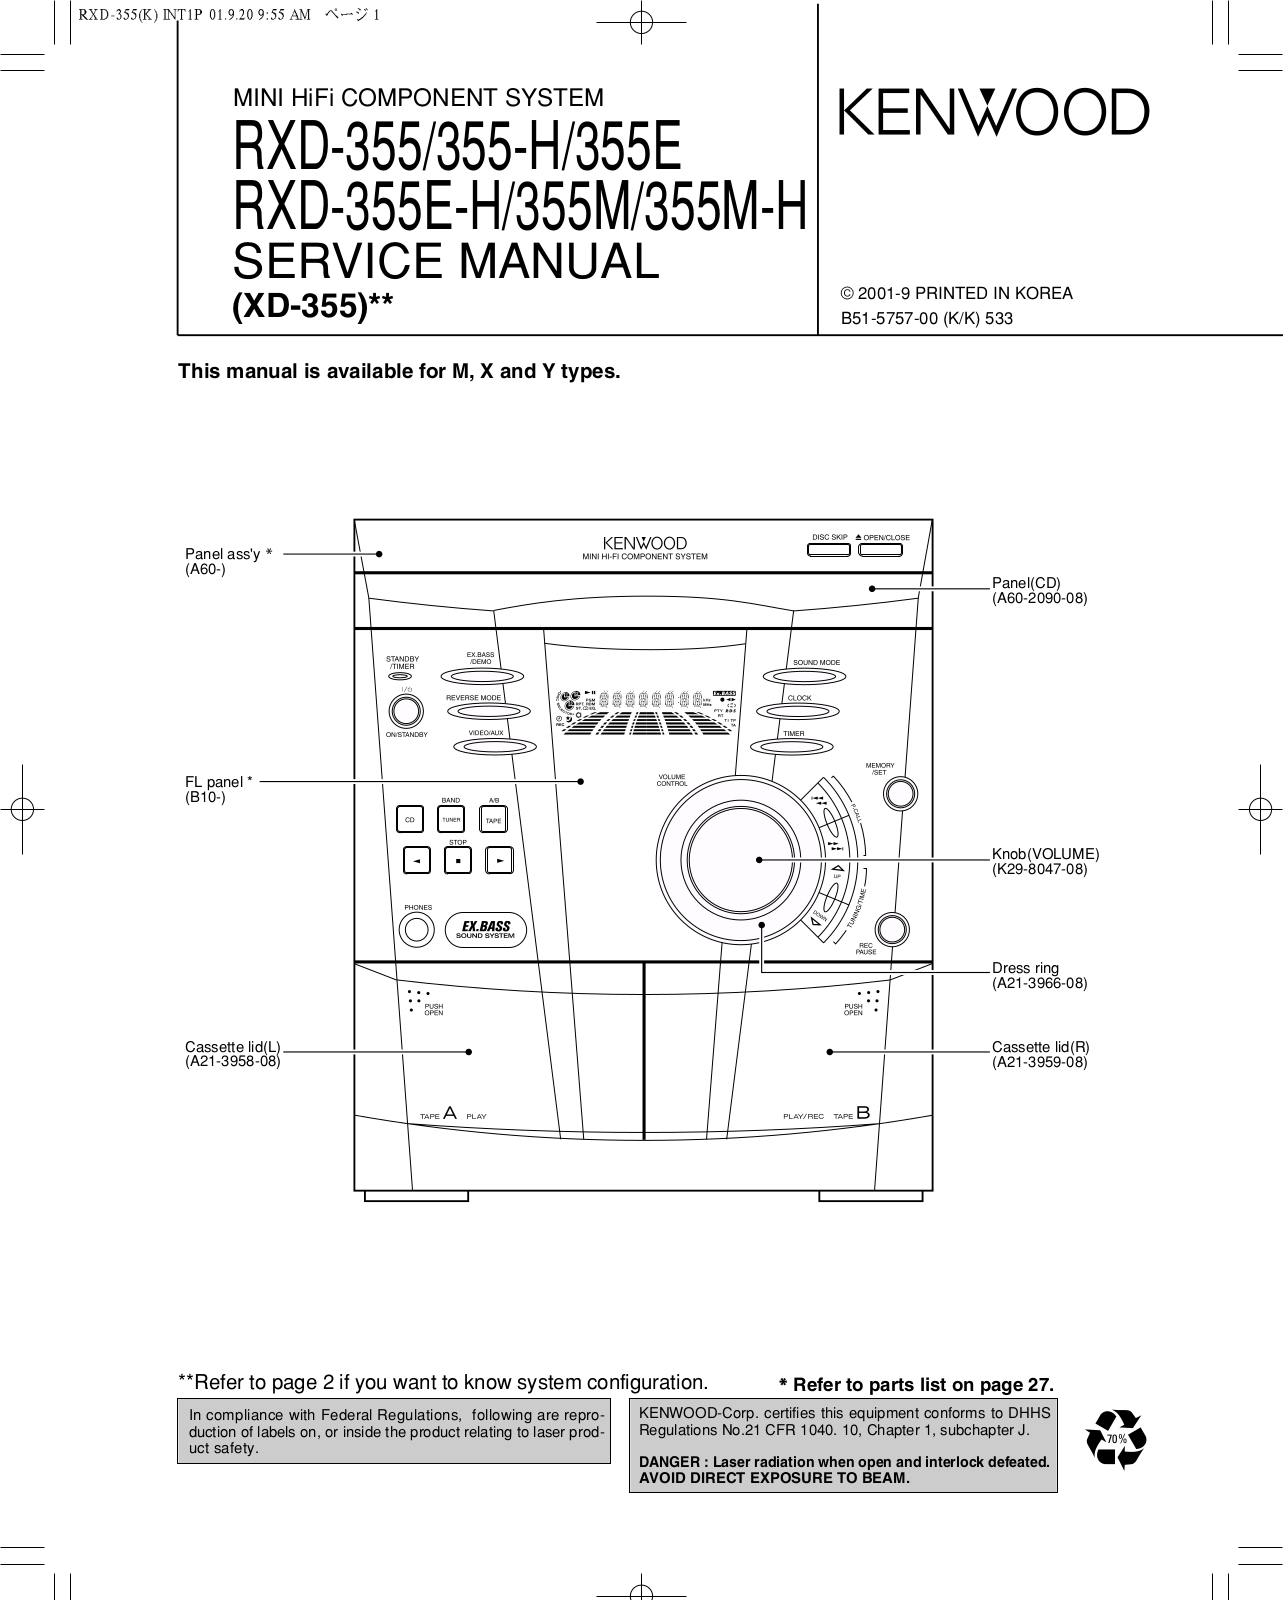 Kenwood RXD-355M-H, RXD-355E-H, RXD-355-H, RXD-355E, RXD-355M User Manual